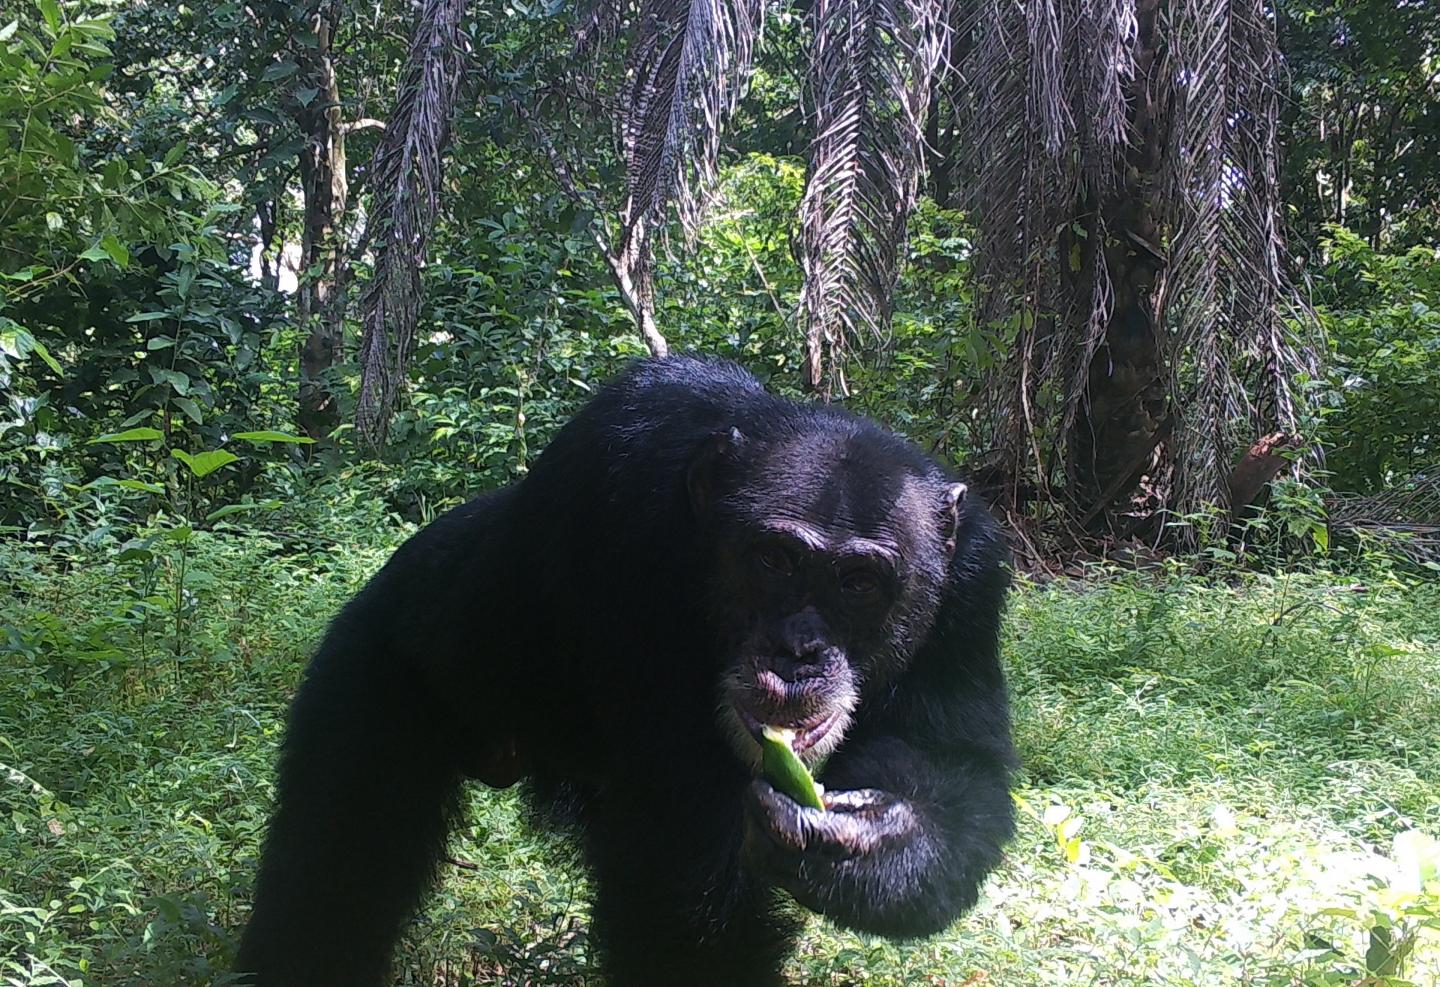 Camera trap image of a chimpanzee feeding on orange fruit behind someone's house